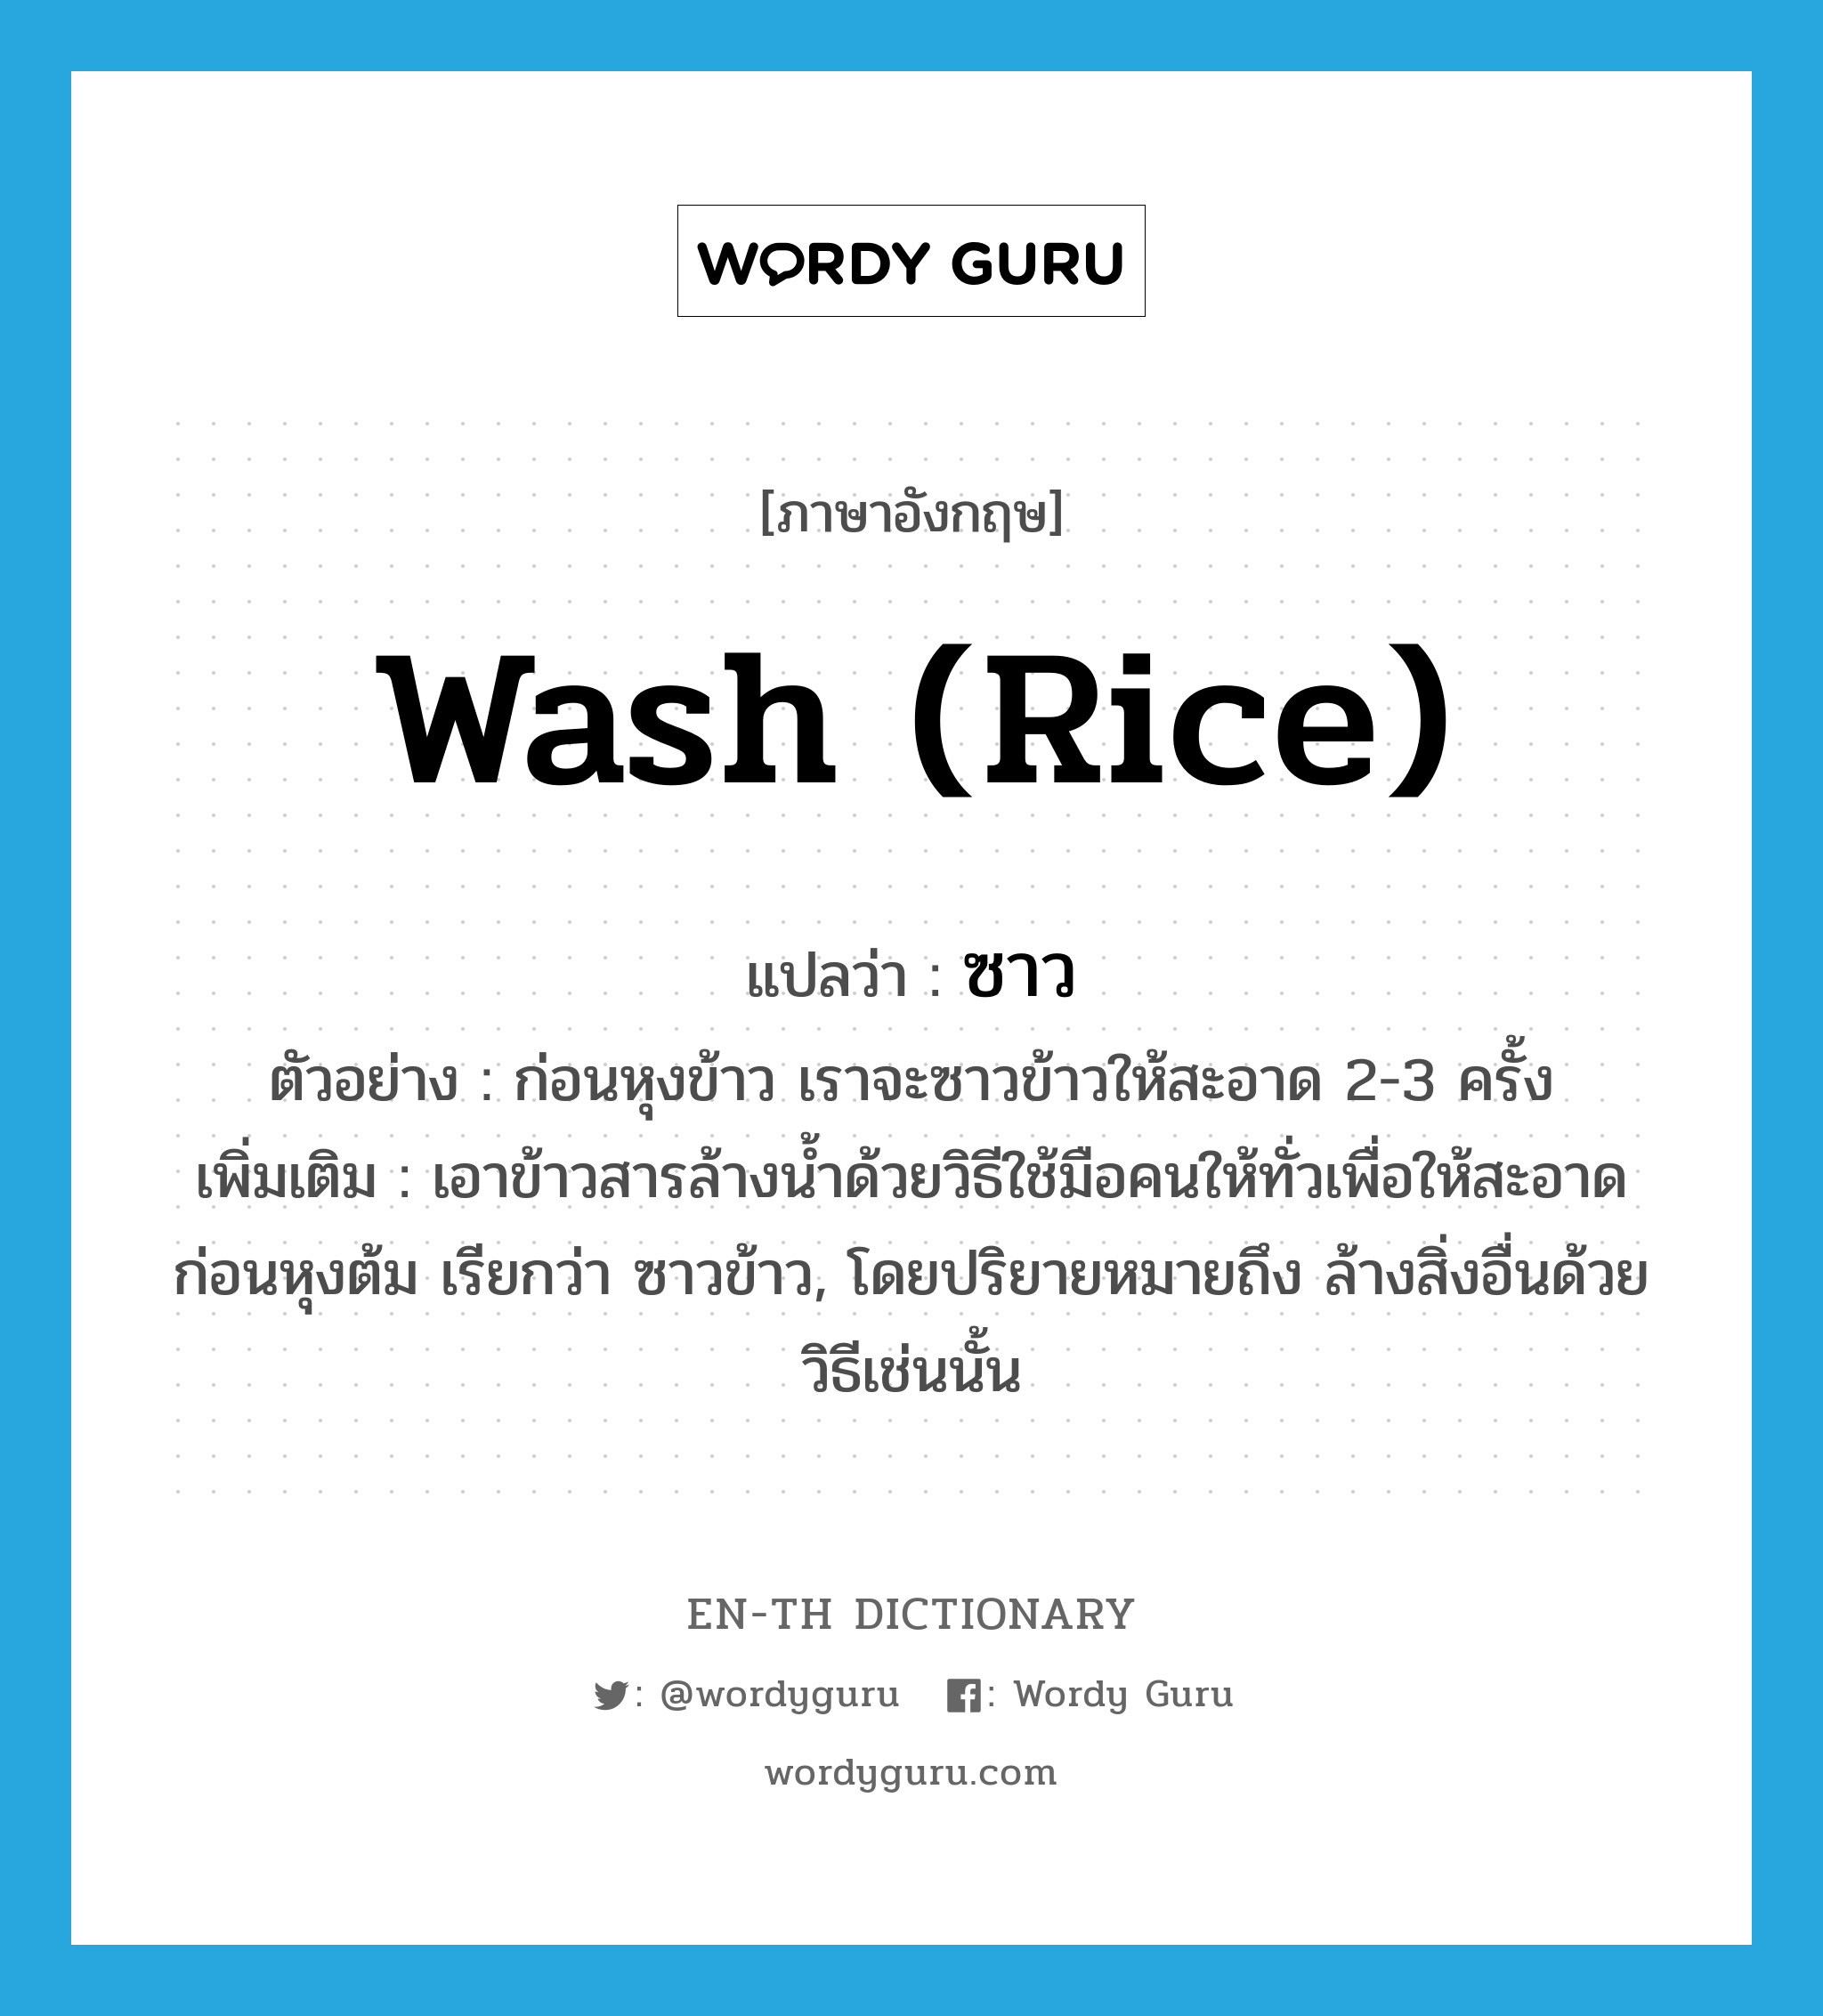 wash (rice) แปลว่า?, คำศัพท์ภาษาอังกฤษ wash (rice) แปลว่า ซาว ประเภท V ตัวอย่าง ก่อนหุงข้าว เราจะซาวข้าวให้สะอาด 2-3 ครั้ง เพิ่มเติม เอาข้าวสารล้างน้ำด้วยวิธีใช้มือคนให้ทั่วเพื่อให้สะอาดก่อนหุงต้ม เรียกว่า ซาวข้าว, โดยปริยายหมายถึง ล้างสิ่งอื่นด้วยวิธีเช่นนั้น หมวด V